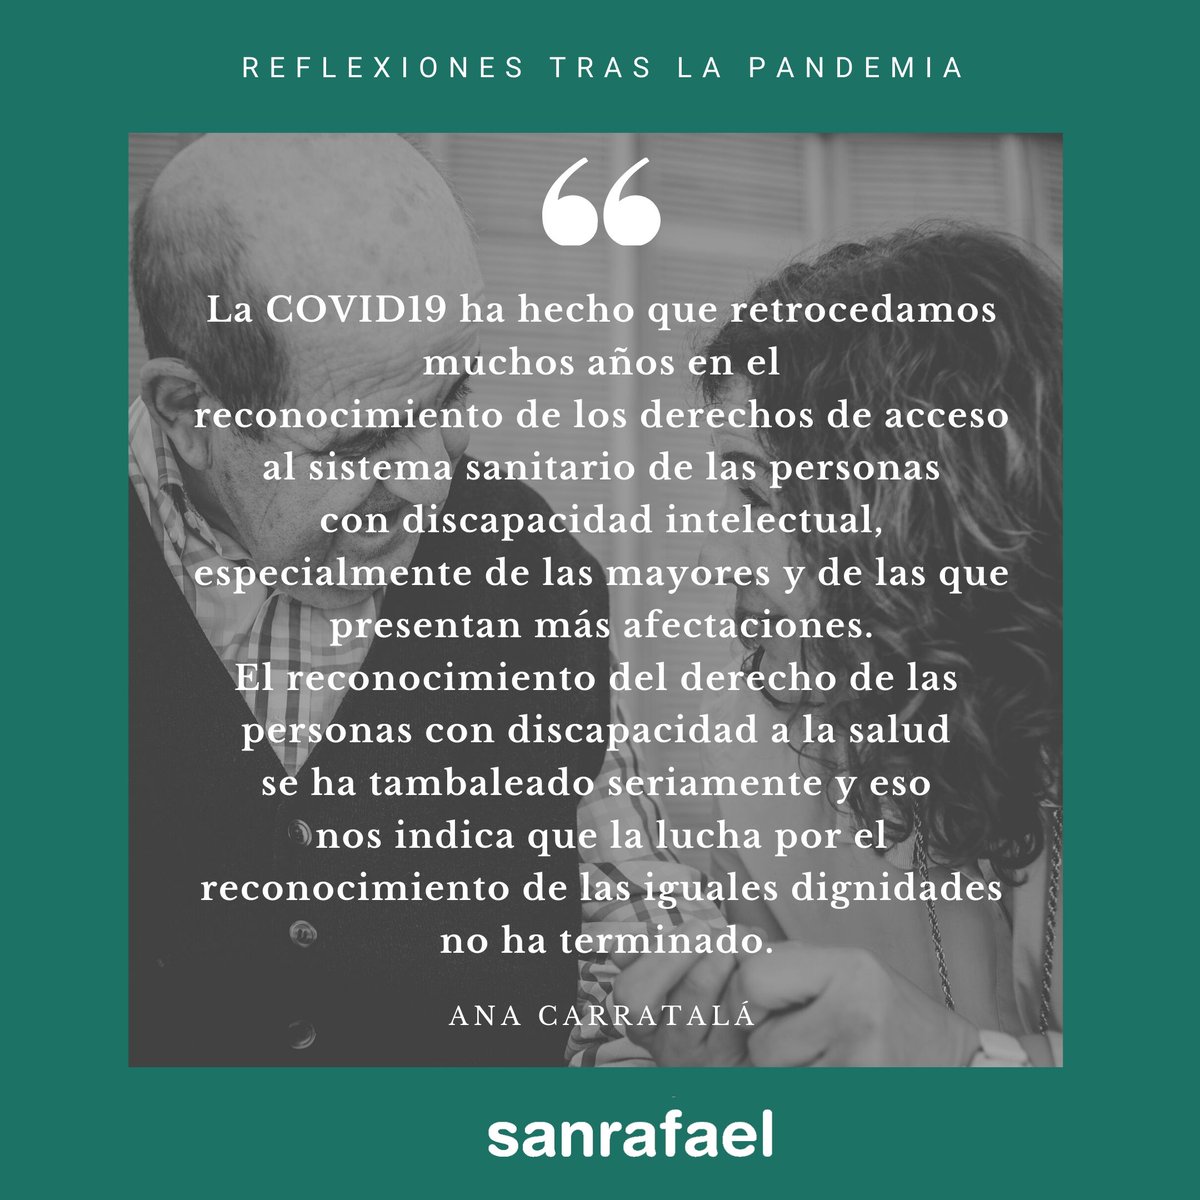 Centro San Rafael on Twitter: 